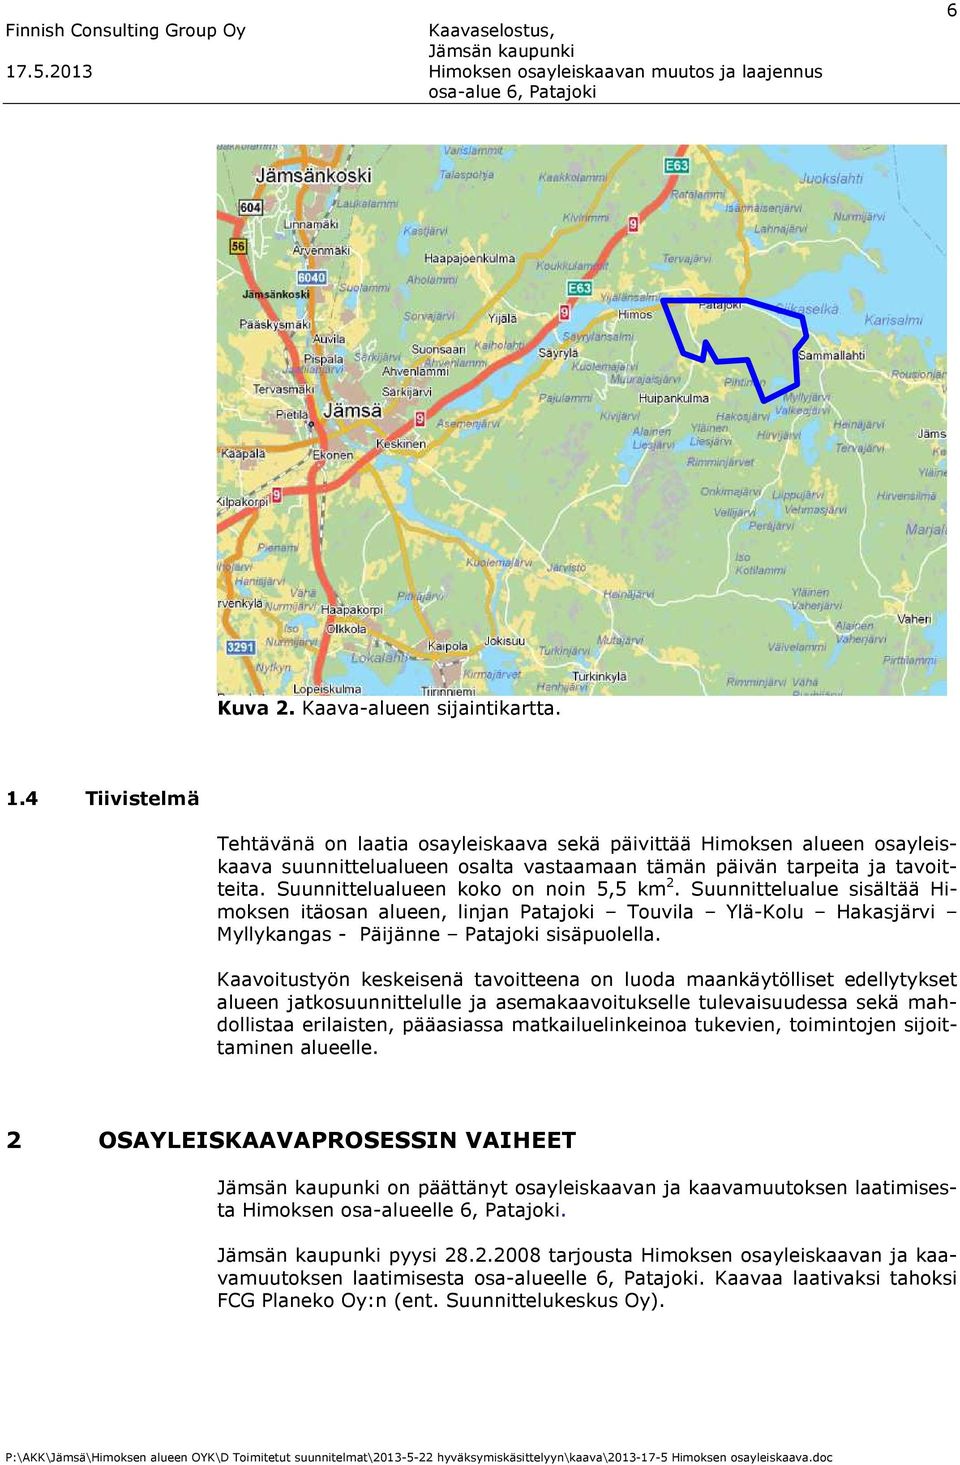 Suunnittelualueen koko on noin 5,5 km 2. Suunnittelualue sisältää Himoksen itäosan alueen, linjan Patajoki Touvila Ylä-Kolu Hakasjärvi Myllykangas - Päijänne Patajoki sisäpuolella.